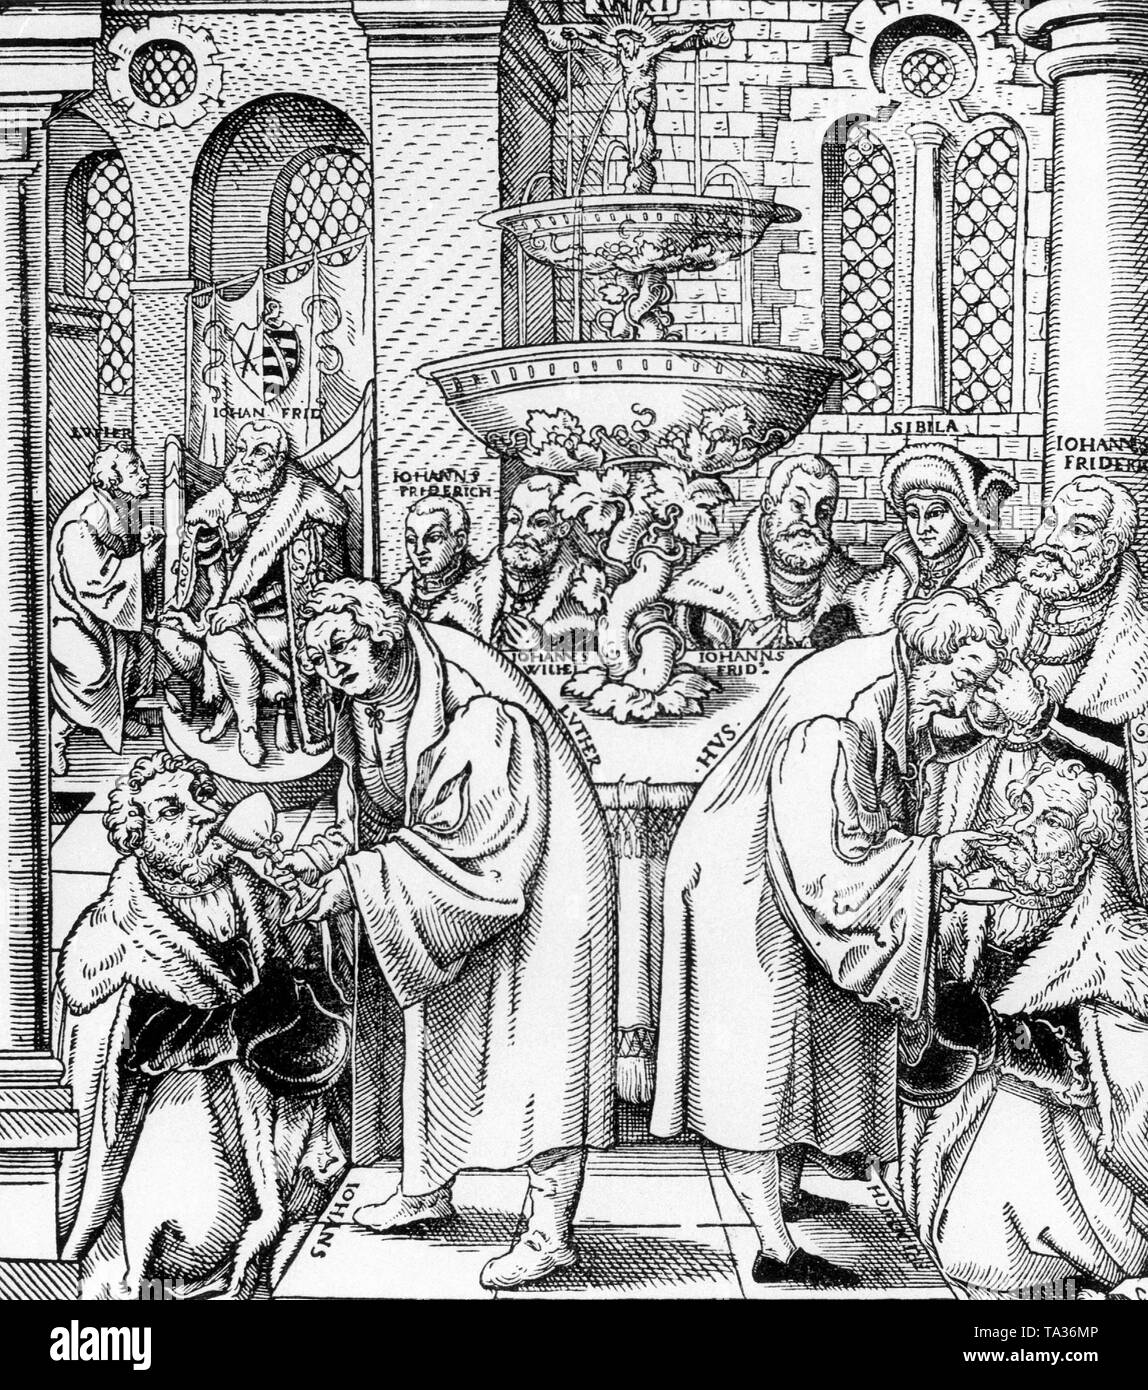 Jan Hus (1370-1415), droite, avec Martin Luther distribuer la Sainte Communion dans une représentation par un artiste inconnu du 16ème siècle Banque D'Images